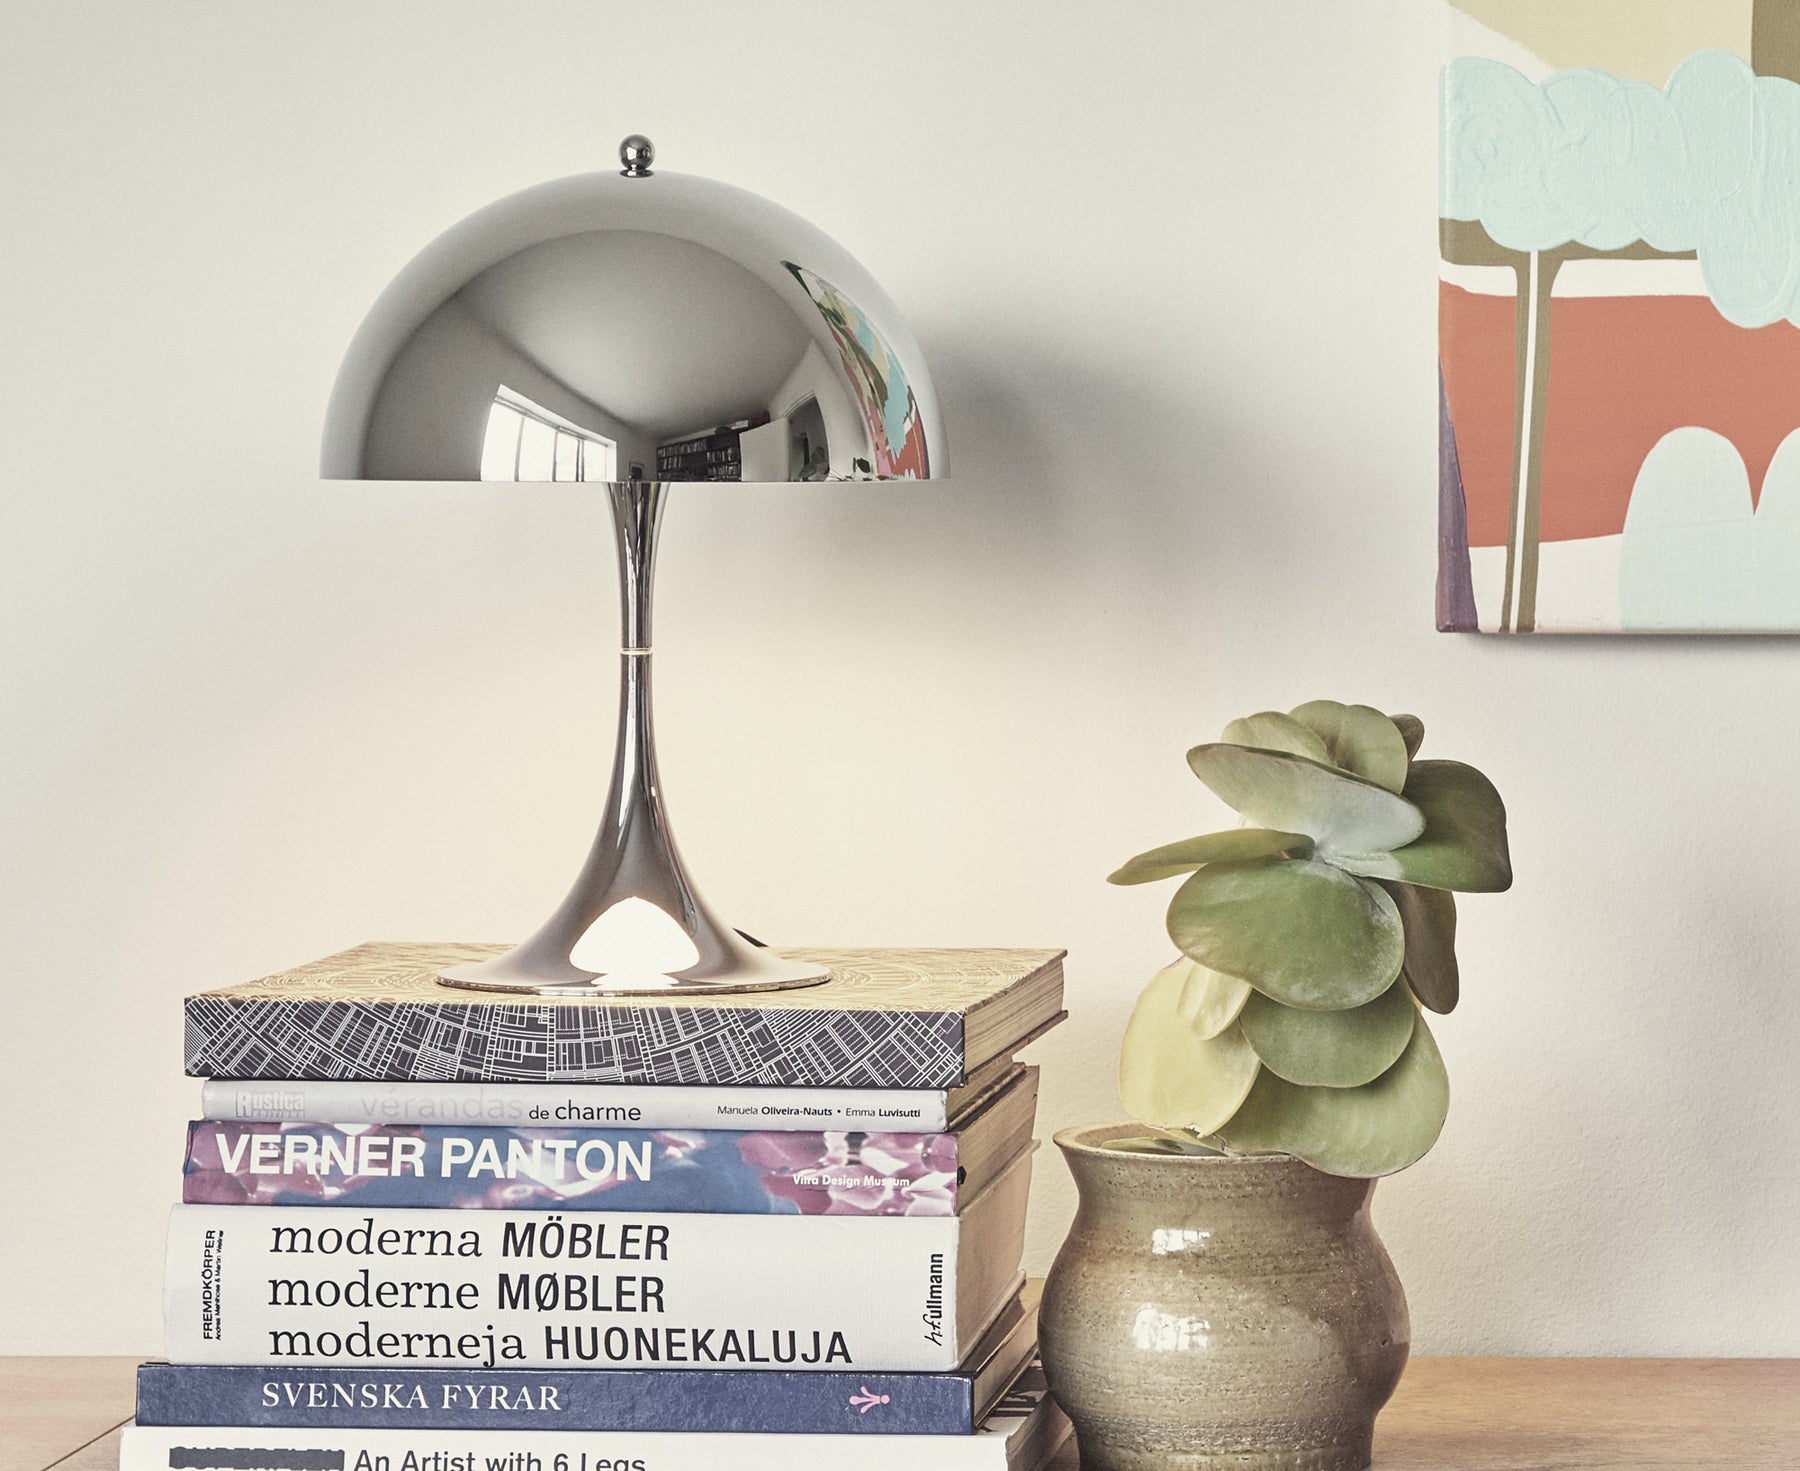 Louis Poulsen Panthella Mini Table Lamp - Chrome